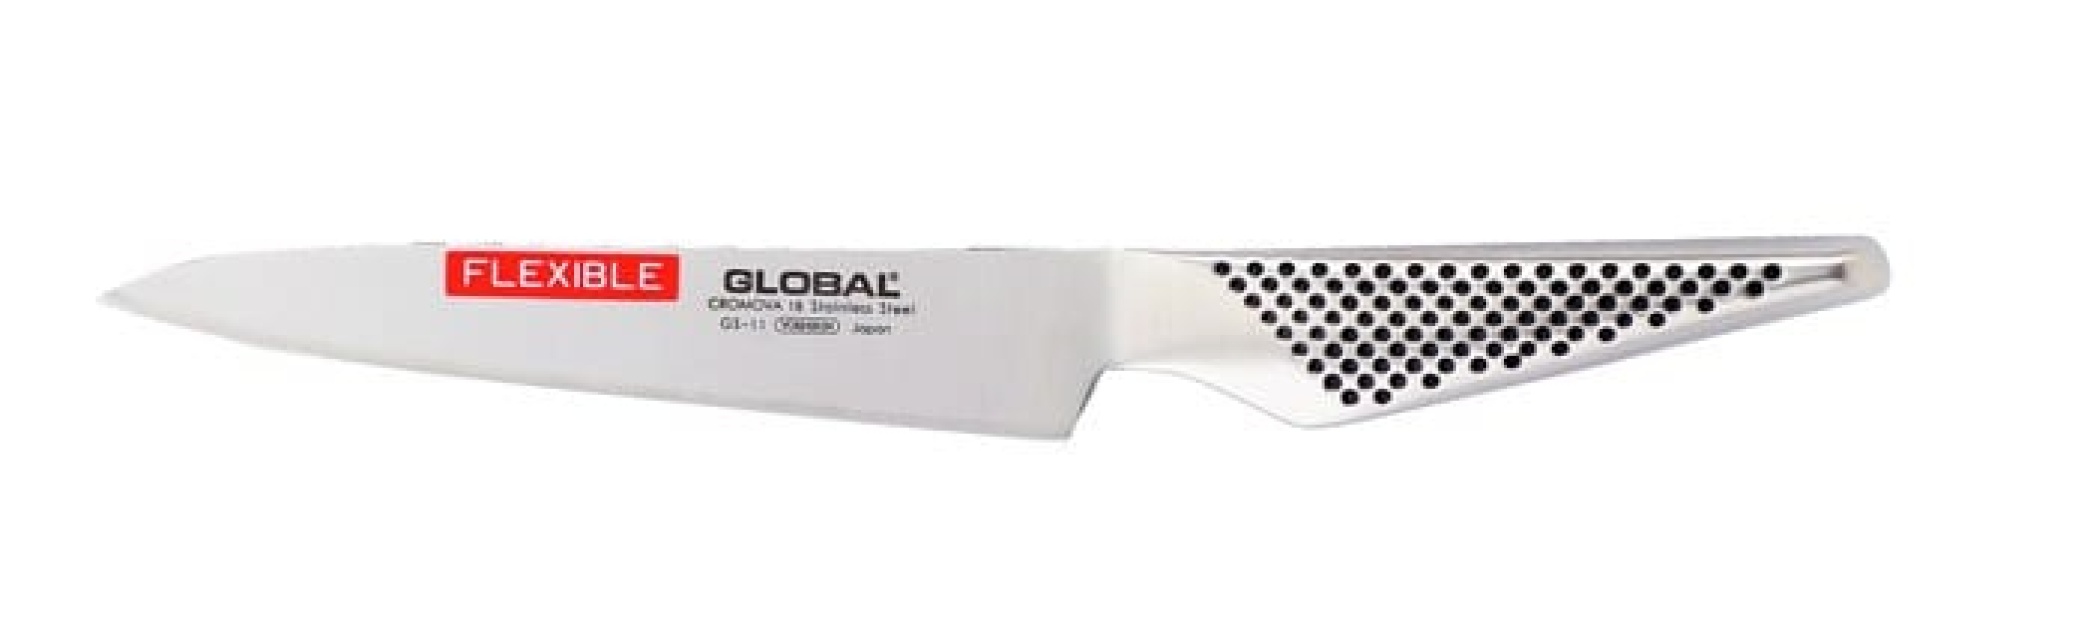 Allkniv GS-11, 15 cm, flexibel - Global